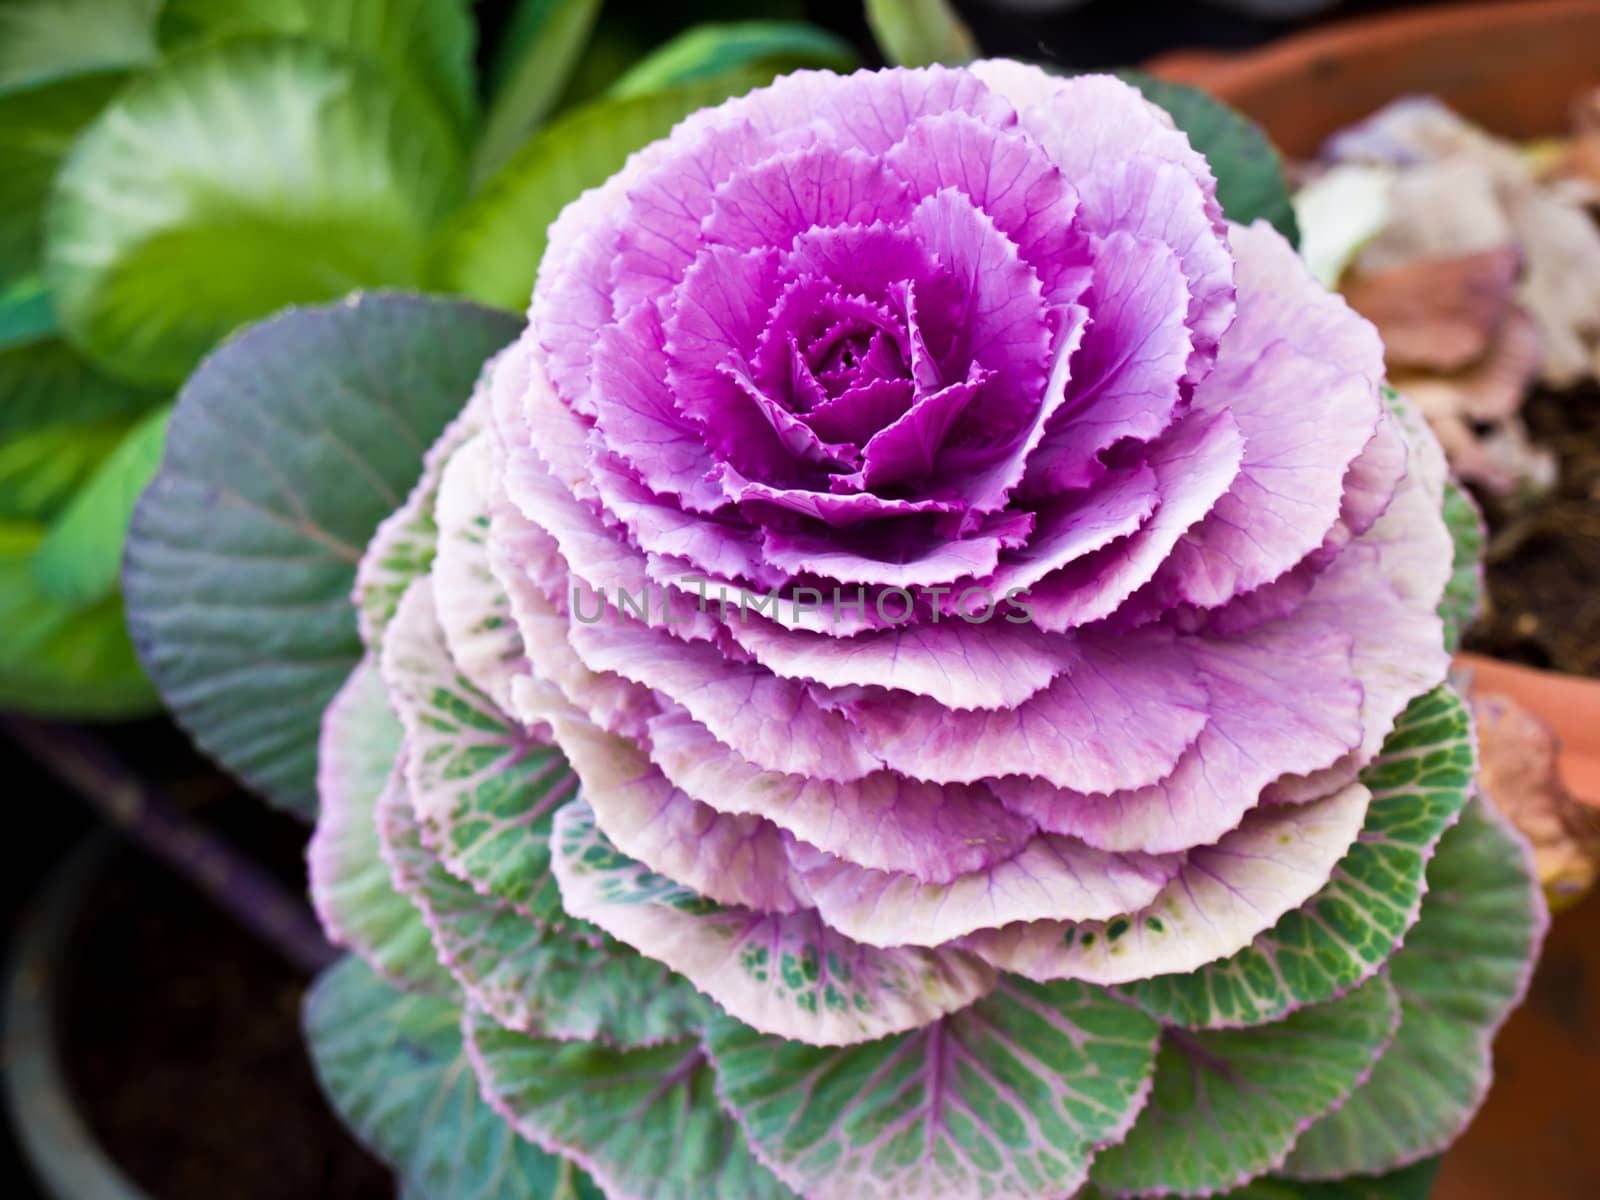 Violet flowering cabbage in nature by gururugu